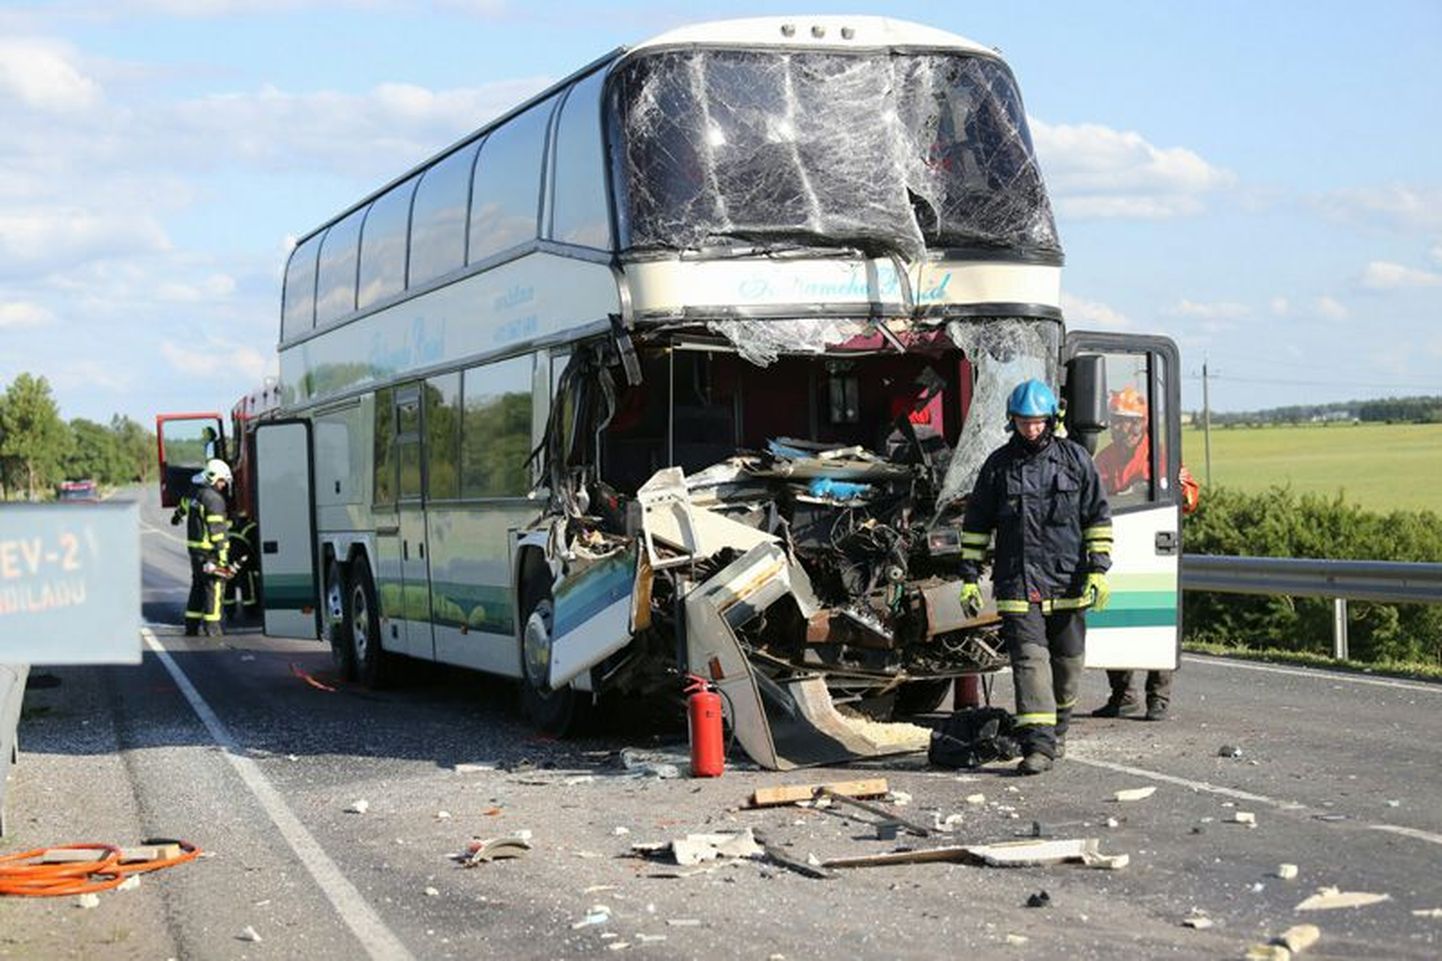 Eile õhtul juhtus avarii Tallinna-Narva maanteel remondis oleval Aluvere viaduktil, kus buss sõitis ilmselt foori taga peatunud veokile tagant sisse. Remonditööde ajaks on viaduktil liiklus muudetud ühesuunaliseks ja seda reguleeritakse valgusfooriga. Bussis peale bussijuhi kedagi ei viibinud. Bussijuht toimetati kiirabiautosse.